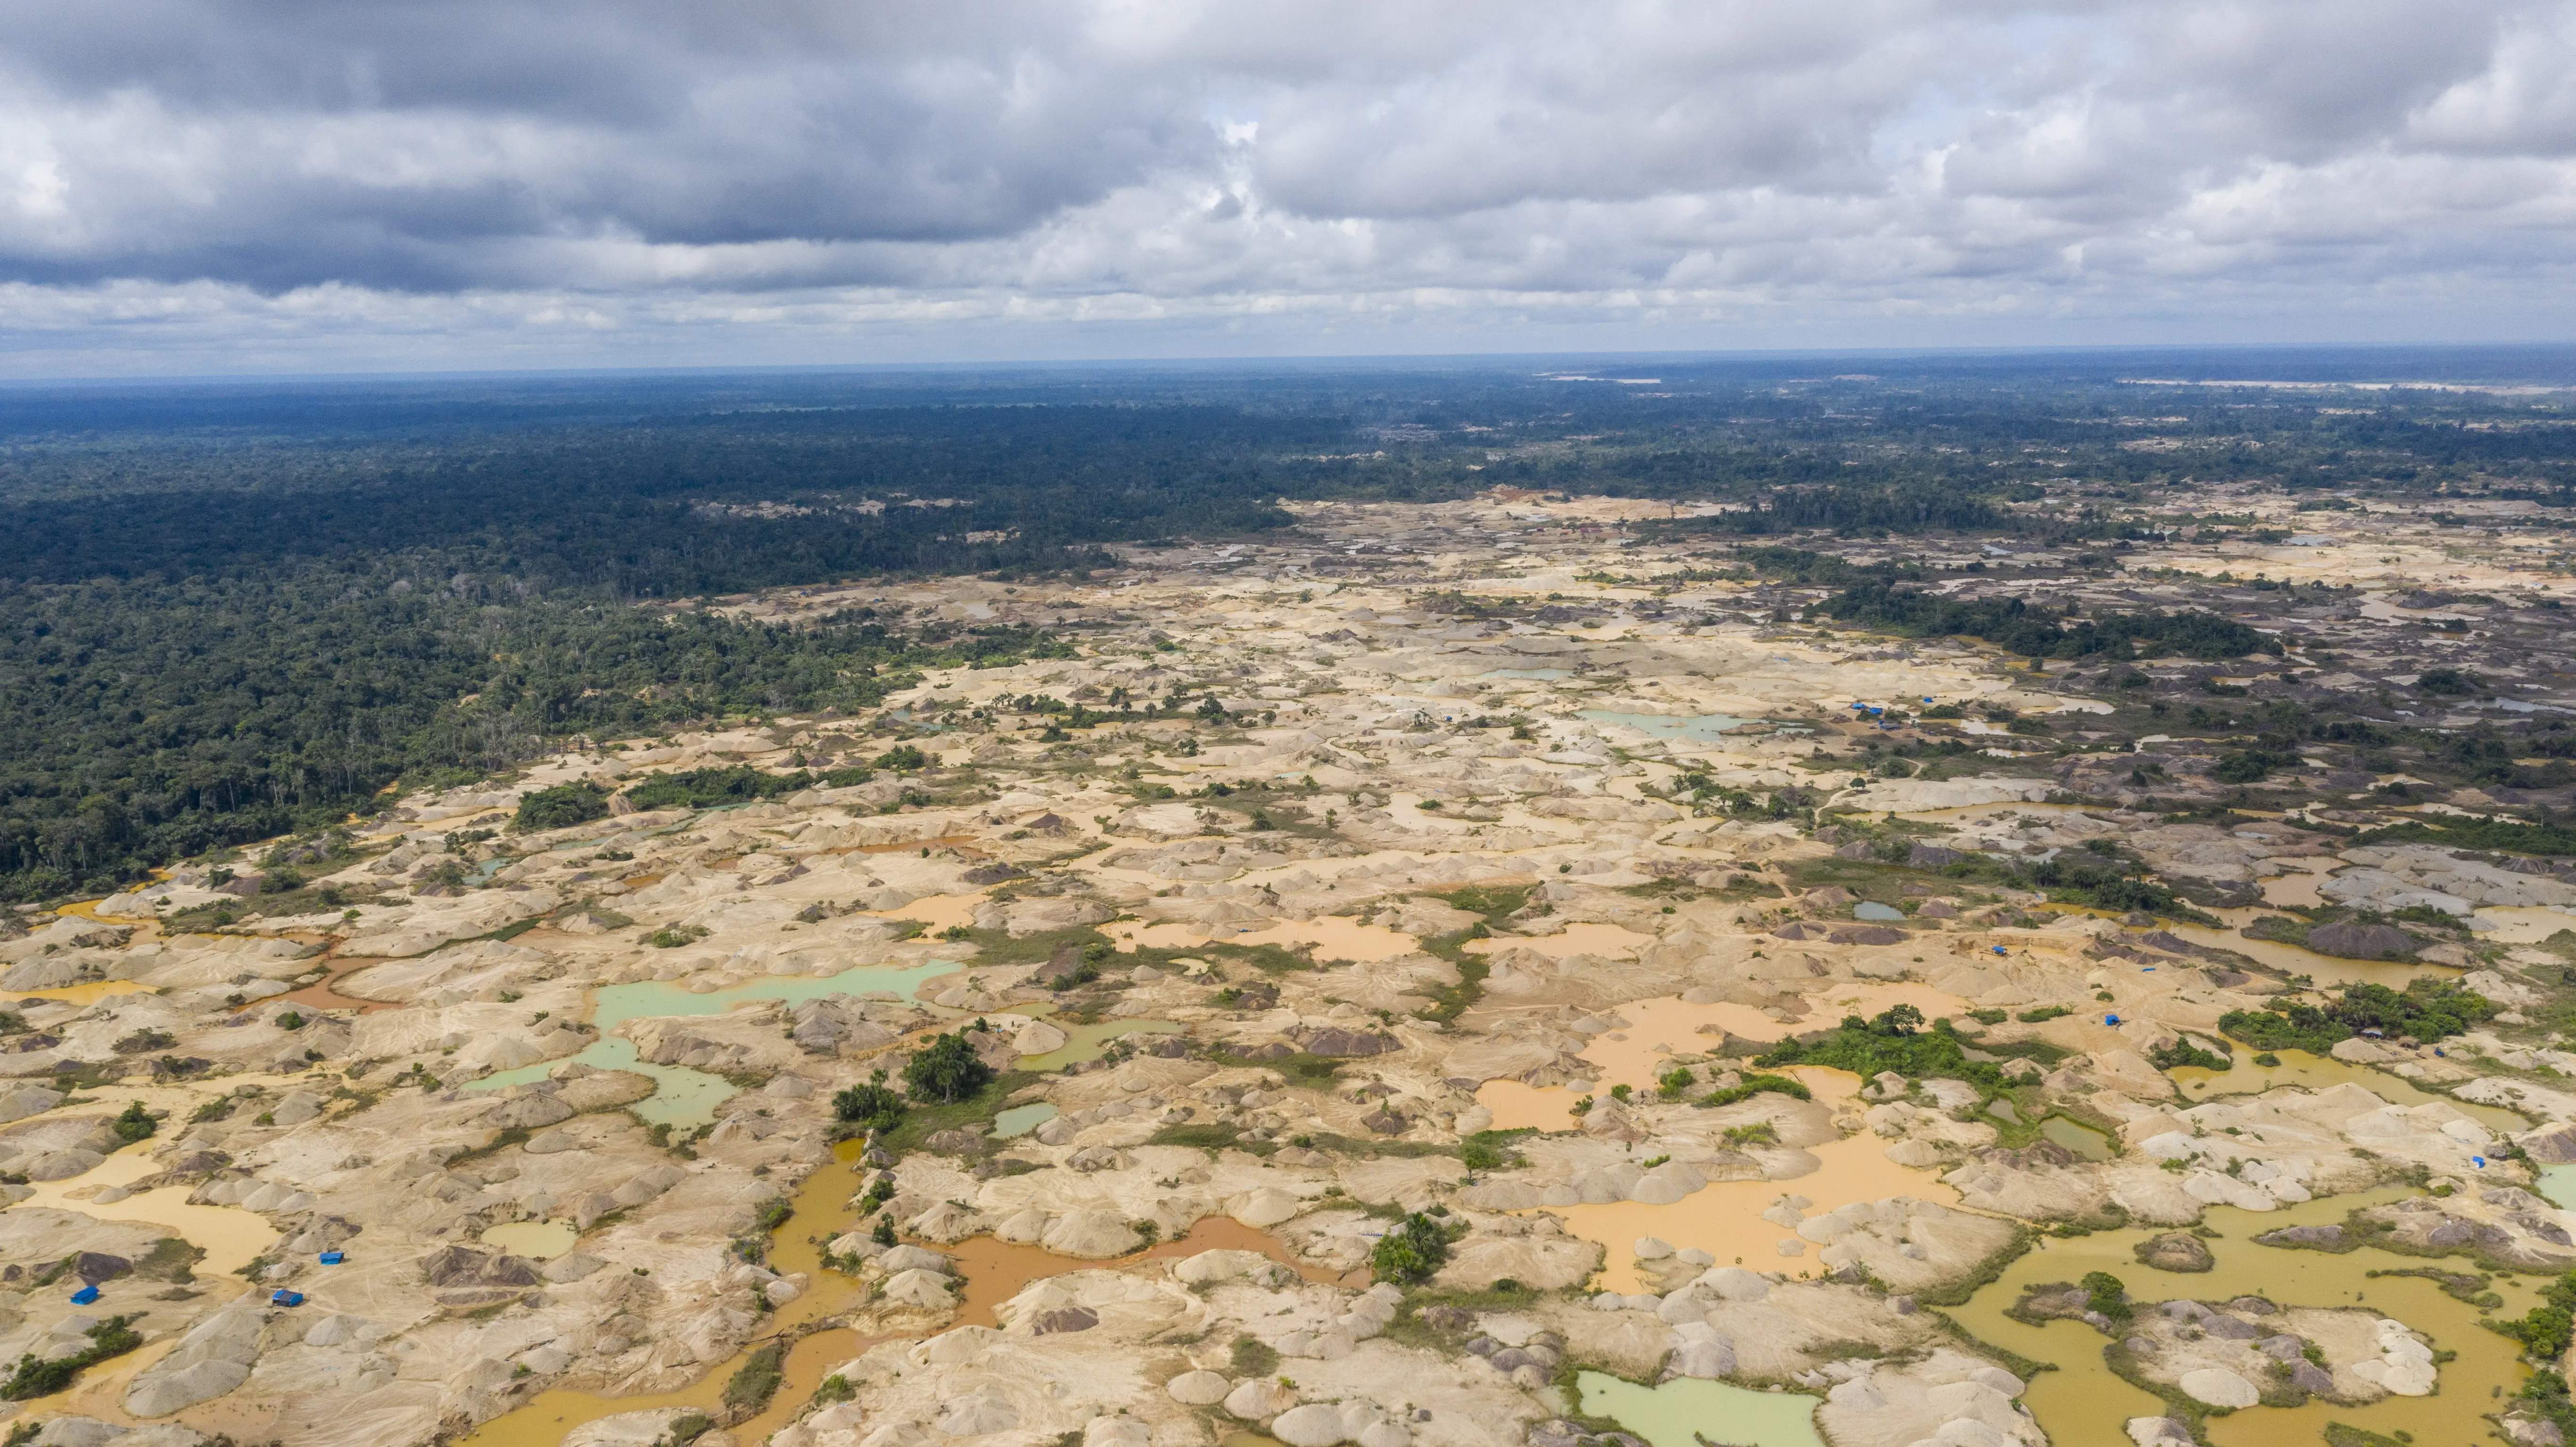 Una imagen aérea y descarnada de la escorrentía minera y la deforestación. Un beige moteado donde debería haber un verde exuberante.